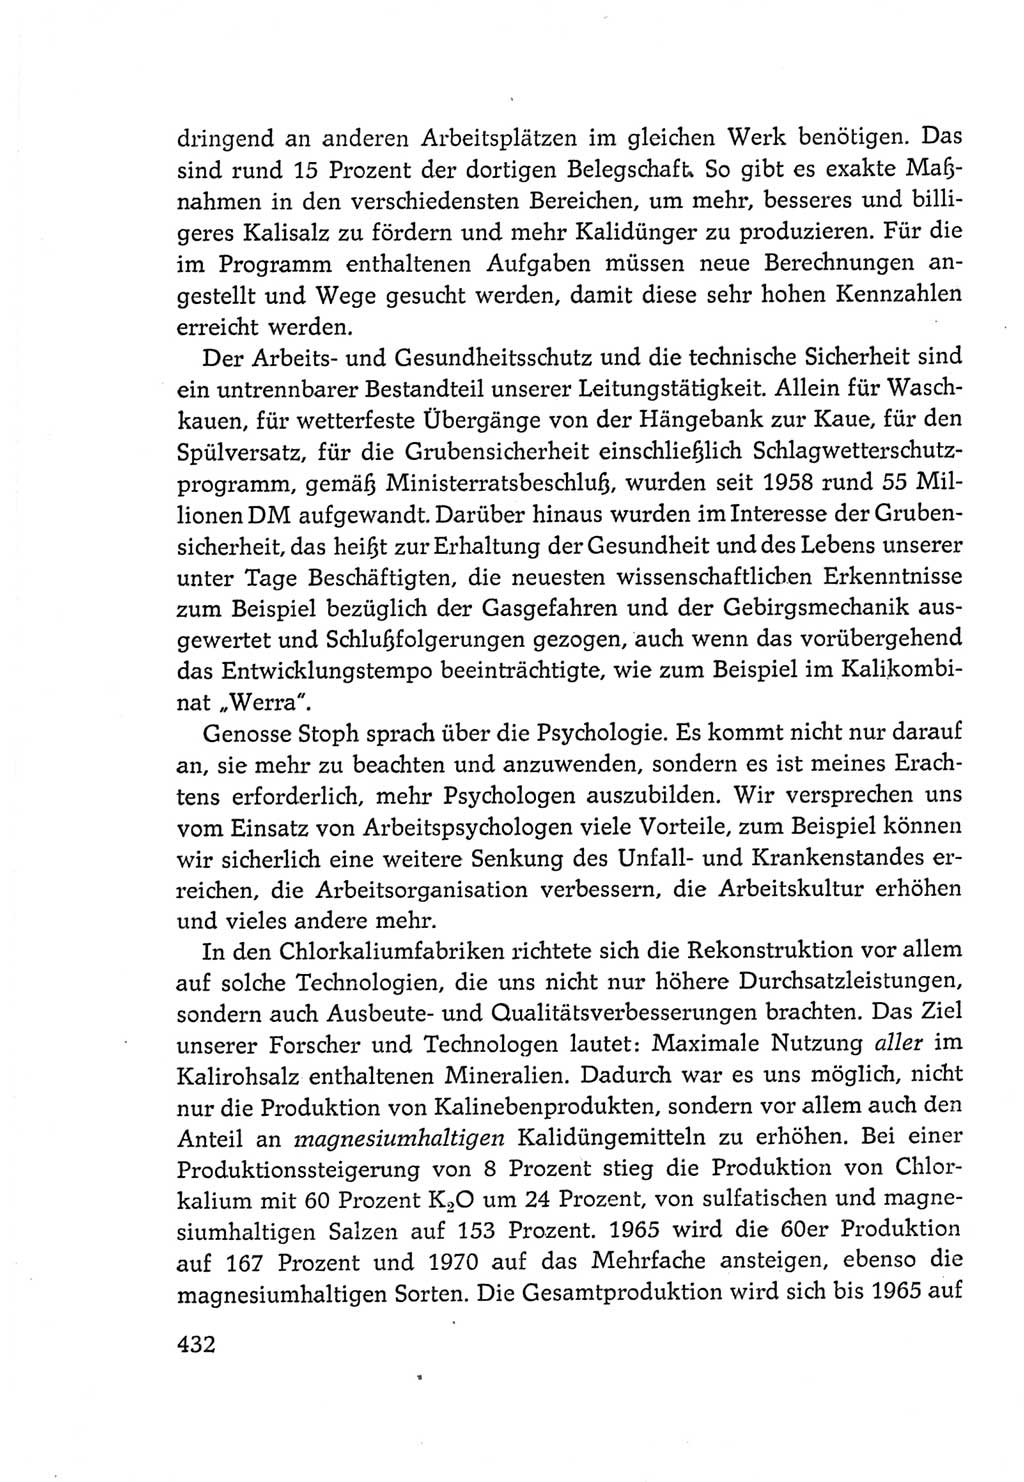 Protokoll der Verhandlungen des Ⅵ. Parteitages der Sozialistischen Einheitspartei Deutschlands (SED) [Deutsche Demokratische Republik (DDR)] 1963, Band Ⅲ, Seite 432 (Prot. Verh. Ⅵ. PT SED DDR 1963, Bd. Ⅲ, S. 432)